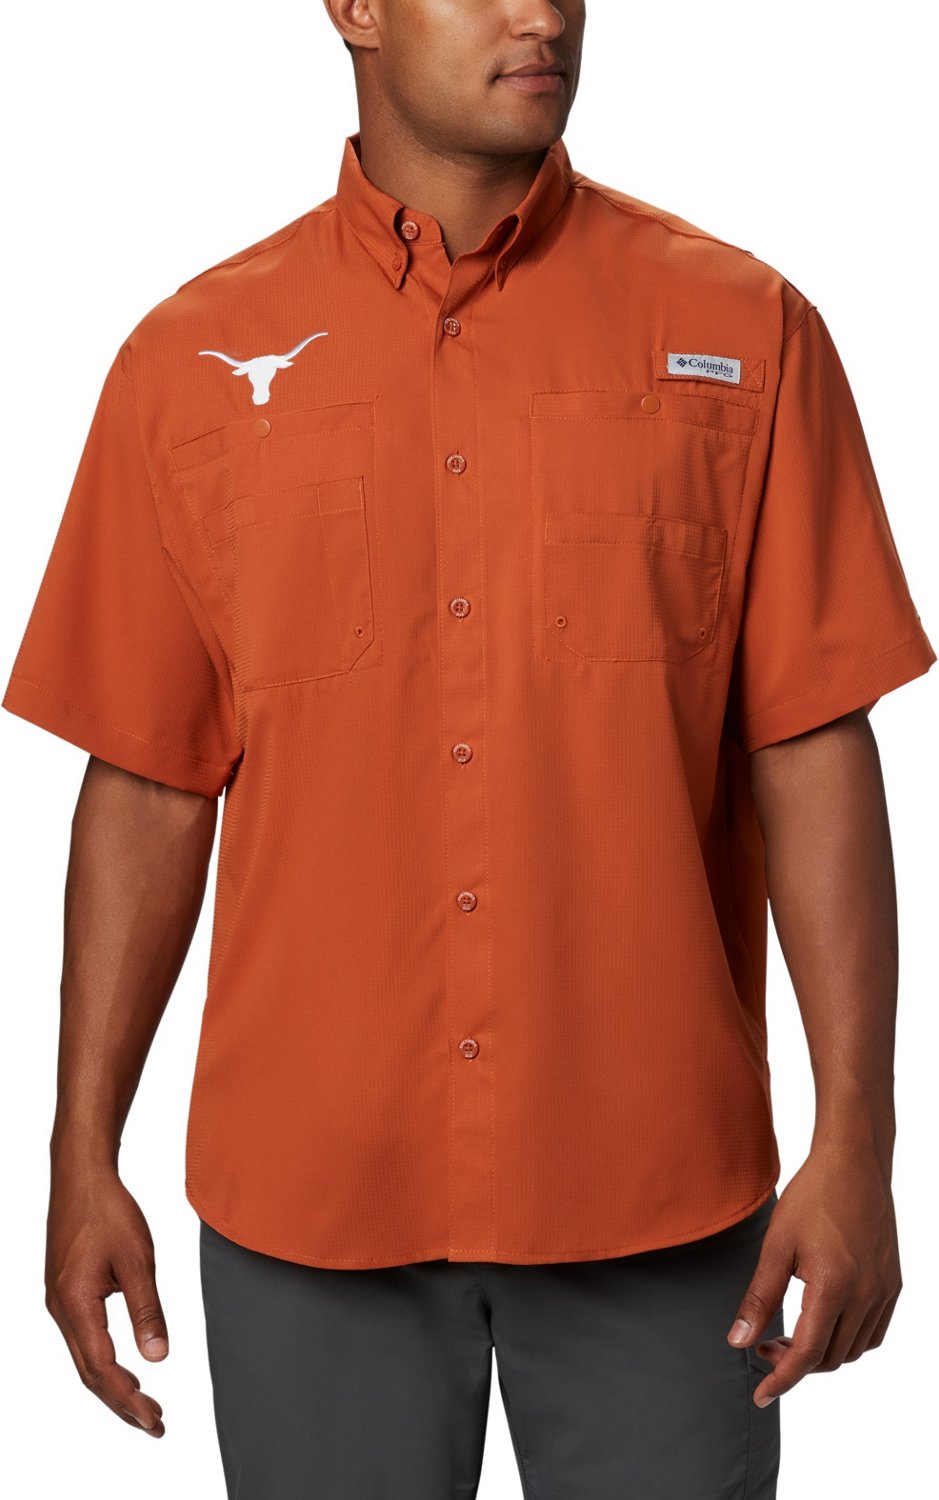 Columbia Sportswear Men's Houston Astros PFG Tamiami Button Down Shirt